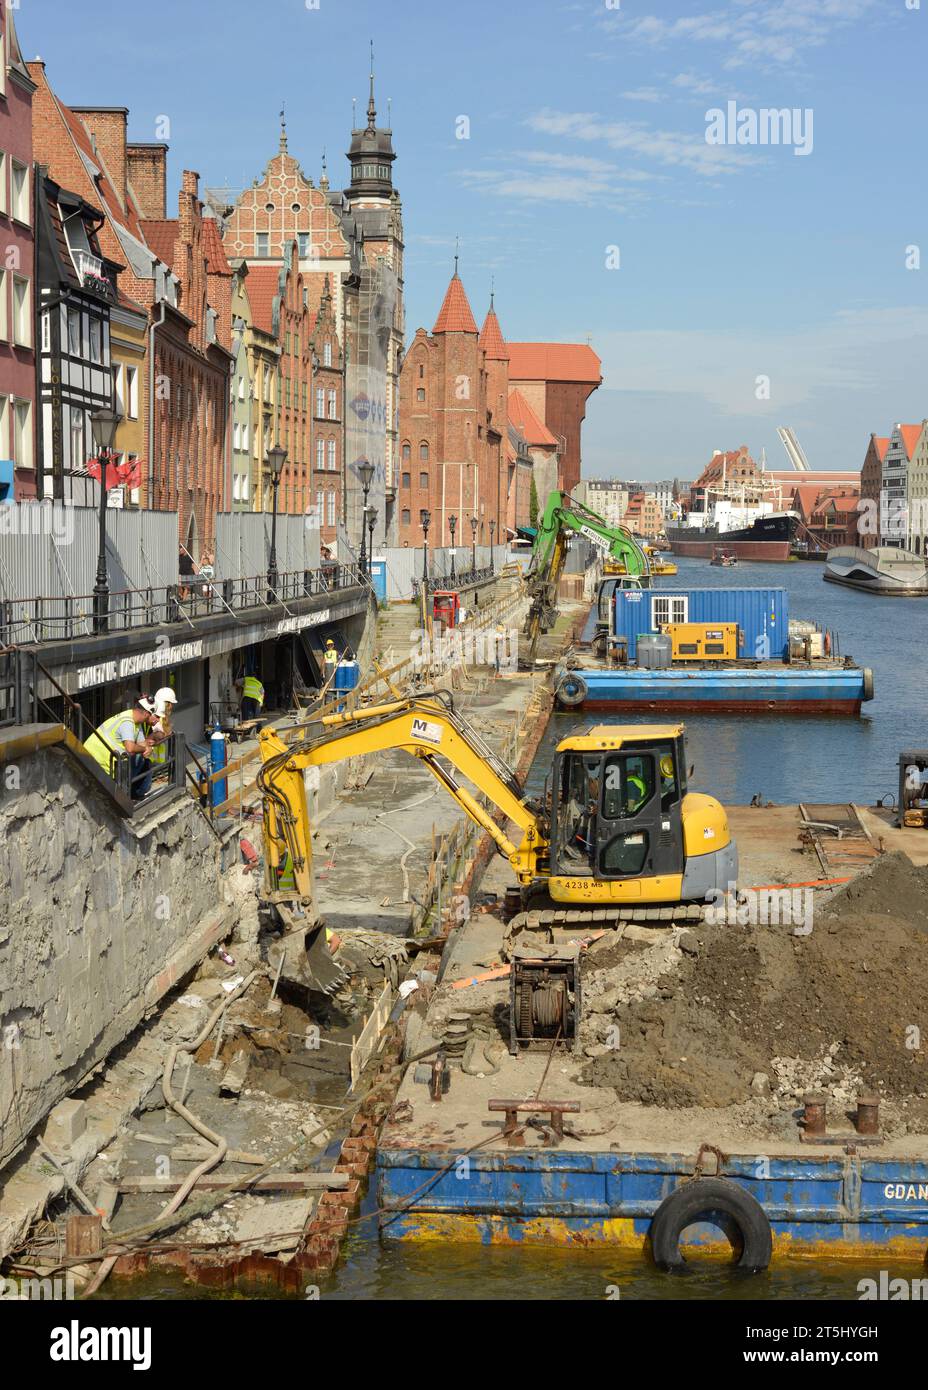 Renovierungsarbeiten und Baustelle mit Baggern auf schwimmenden Plattformen am Ufer des Motlawa-Flusses in der Altstadt von Danzig, Polen, EU Stockfoto